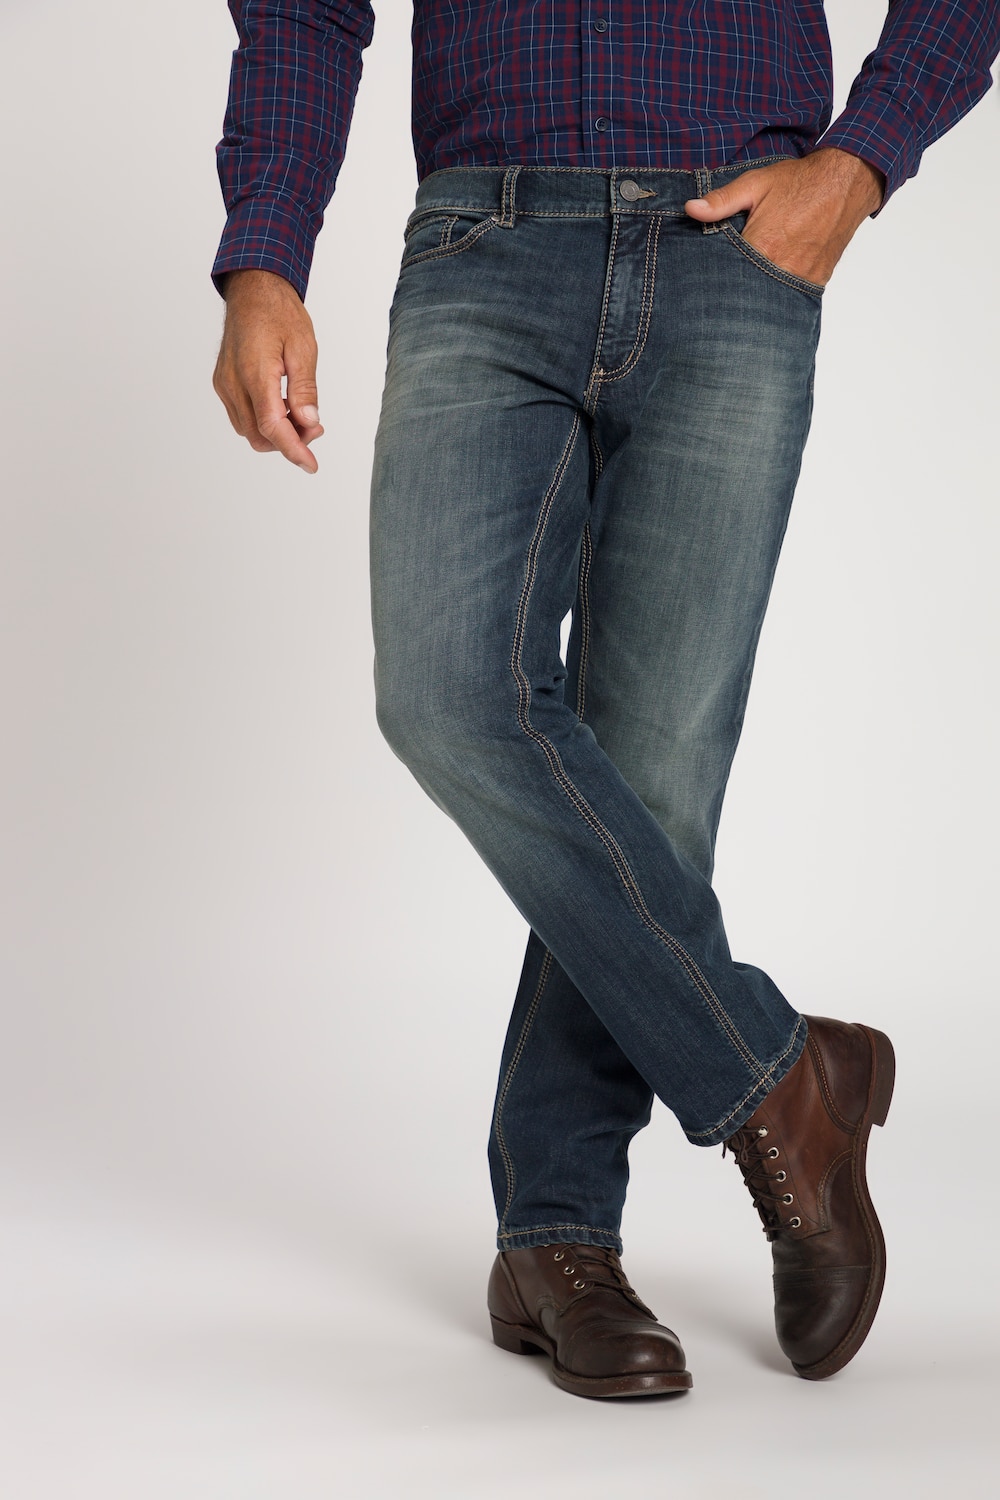 Grote Maten jeans, Heren, paars, Maat: 33, Katoen, JP1880